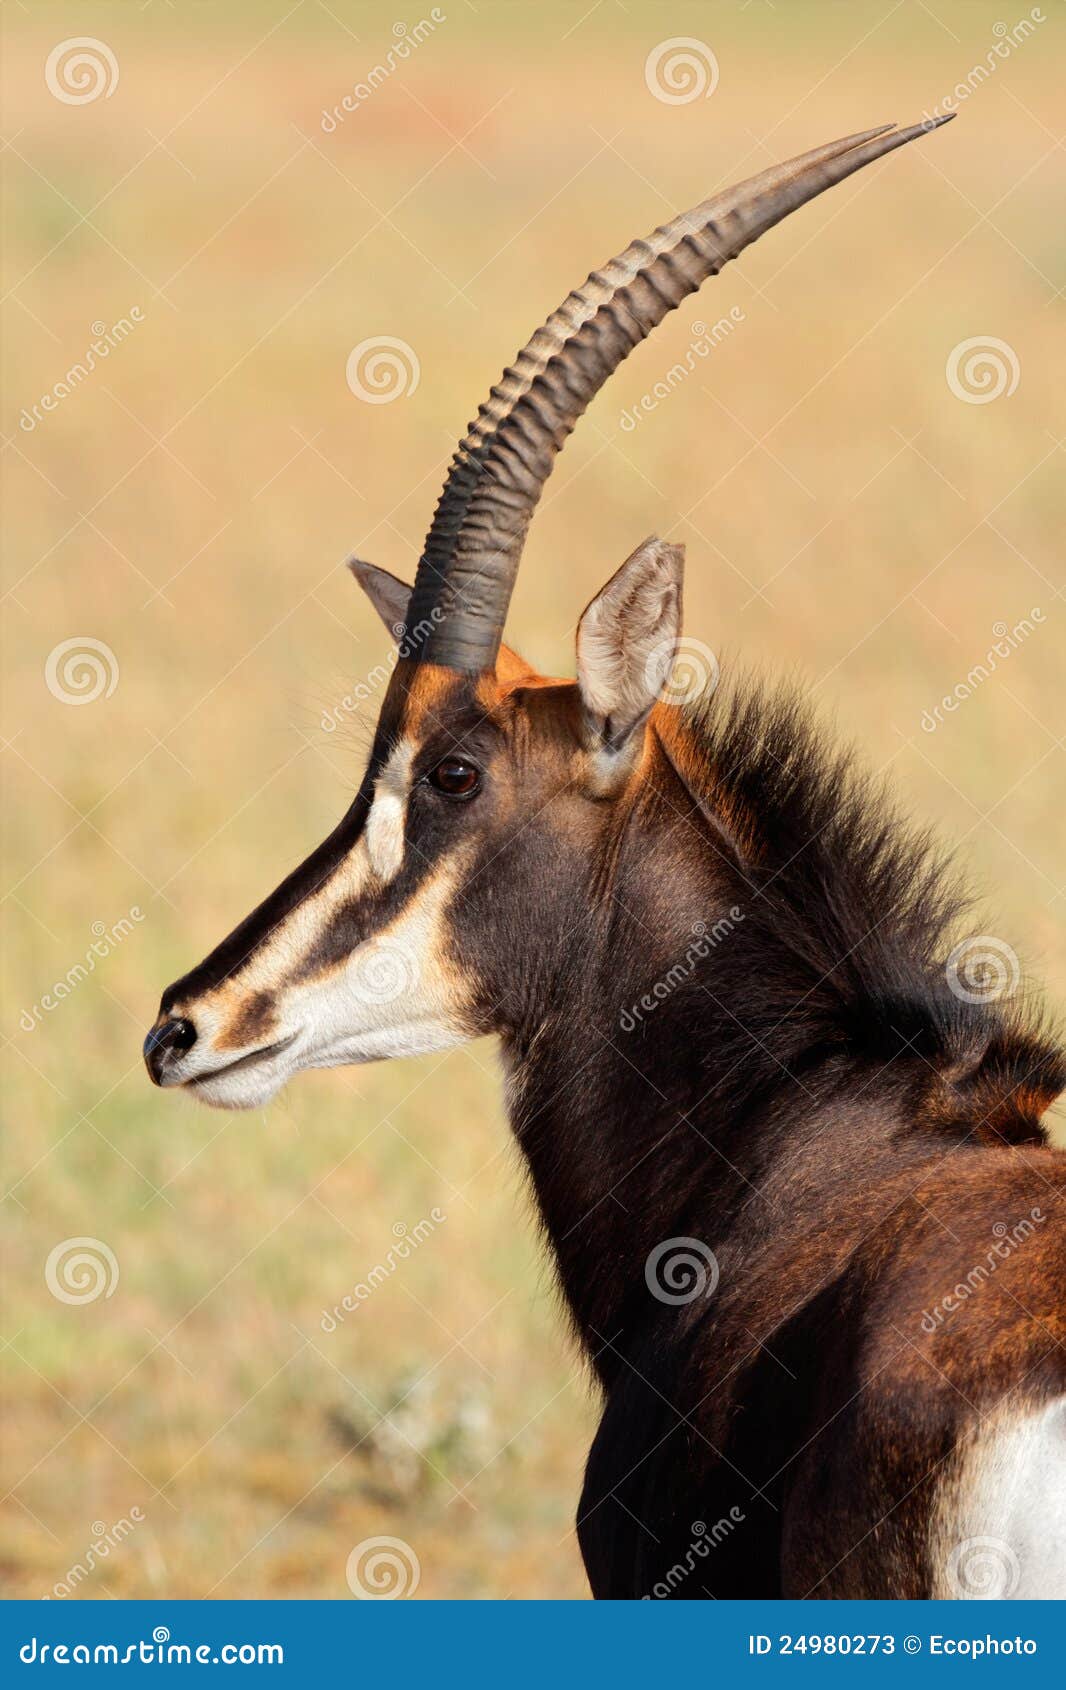 sable antelope portrait